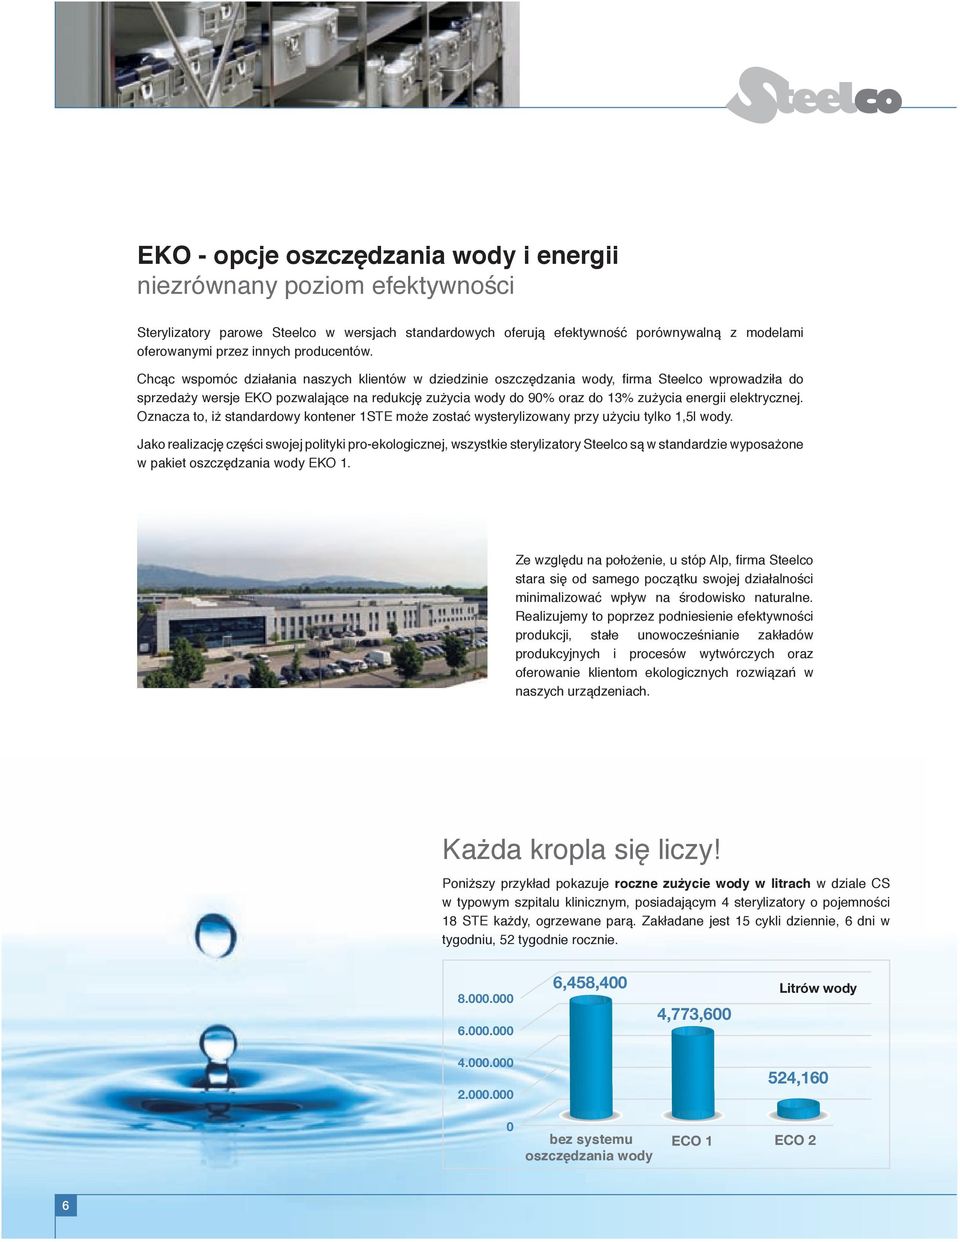 Chcąc wspomóc działania naszych klientów w dziedzinie oszczędzania wody, firma Steelco wprowadziła do sprzedaży wersje EKO pozwalające na redukcję zużycia wody do 90% oraz do 13% zużycia energii